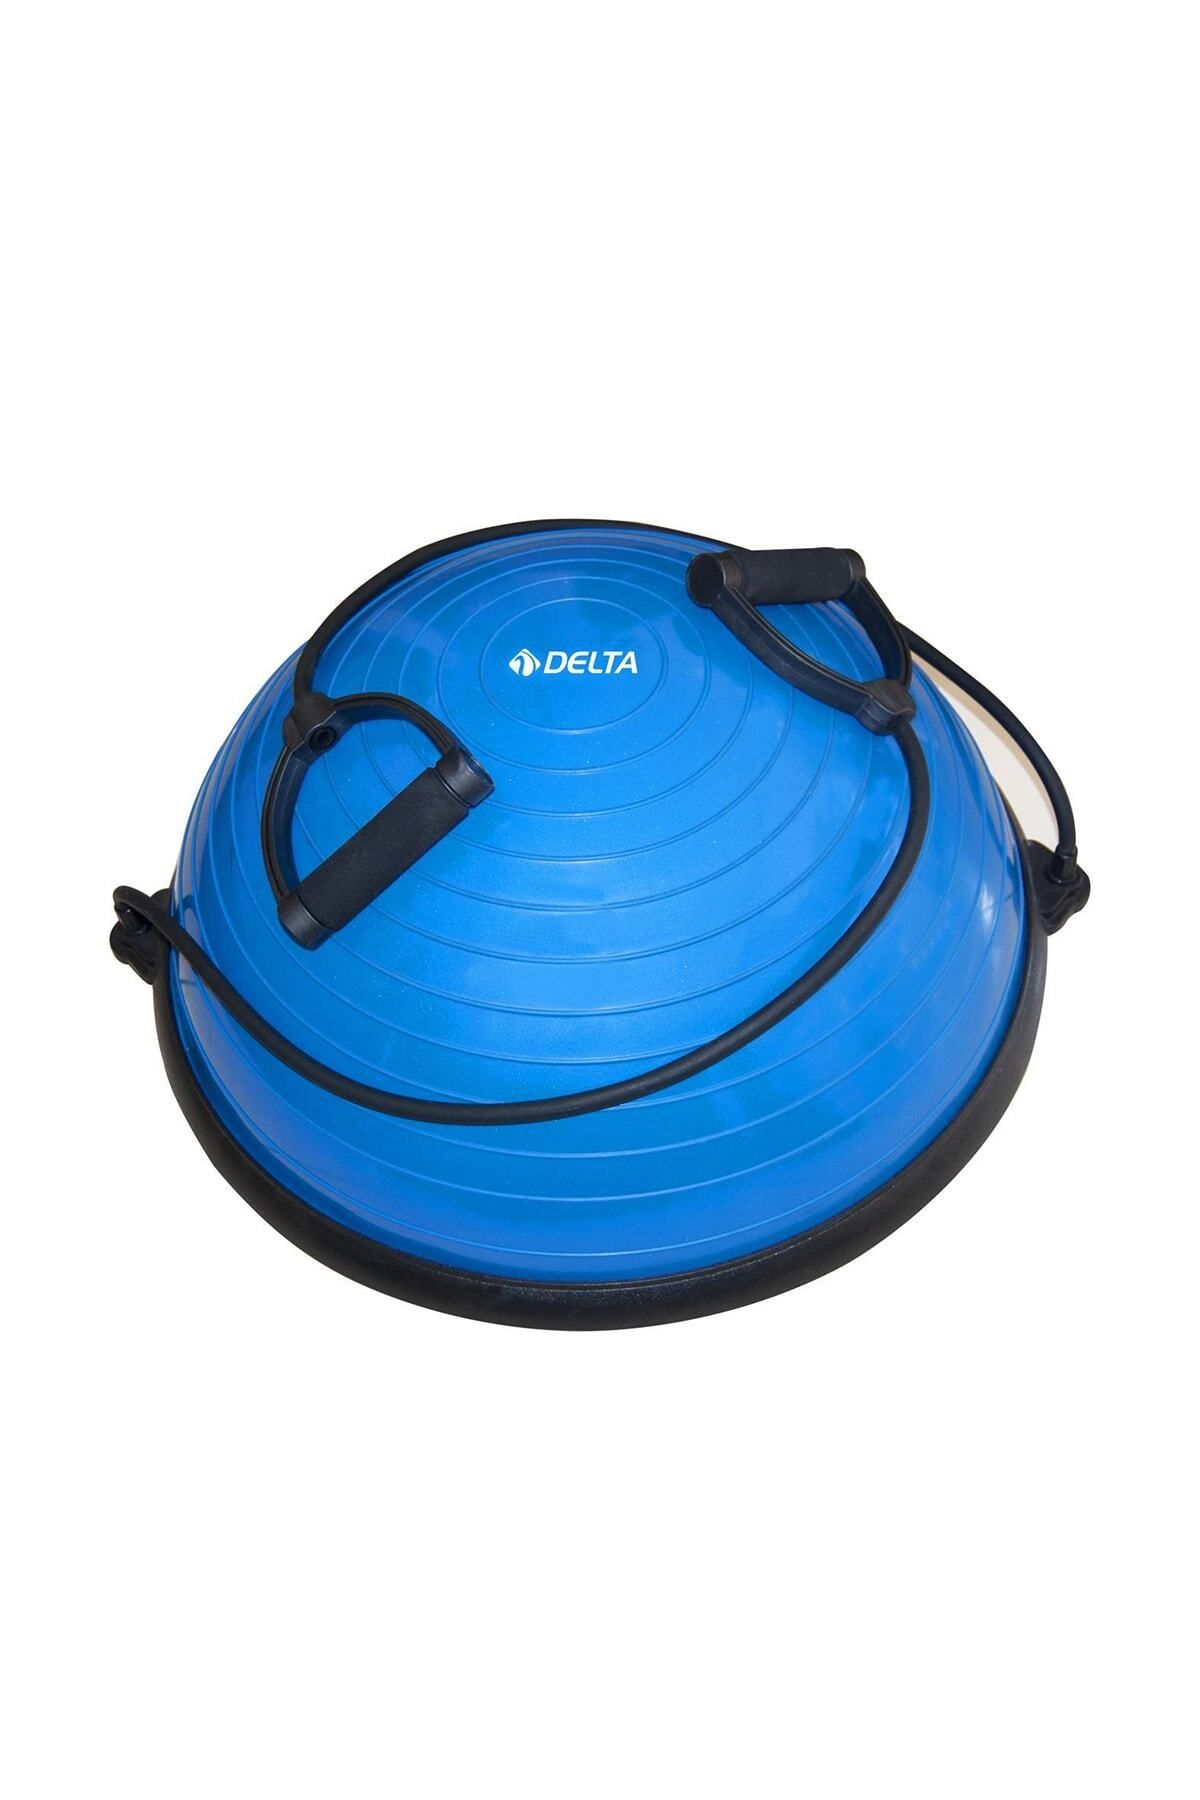 teknotrust Uluslararası Standart Ebatlarda 62 Cm Çap Bosu Ball Bosu Topu Pilates Denge Aleti (Pompalı)